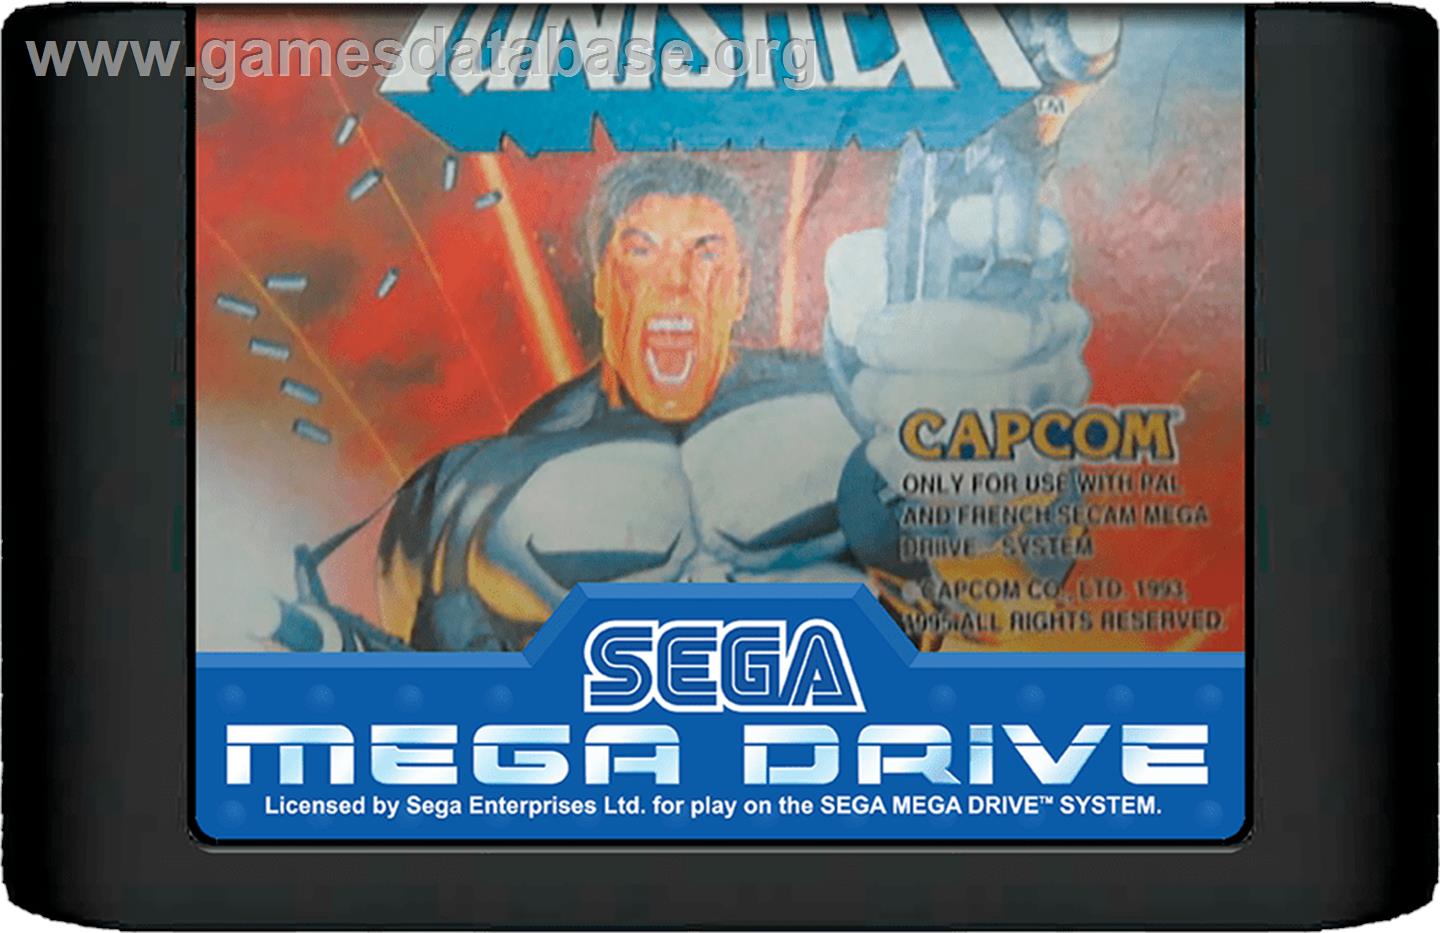 Punisher, The - Sega Genesis - Artwork - Cartridge